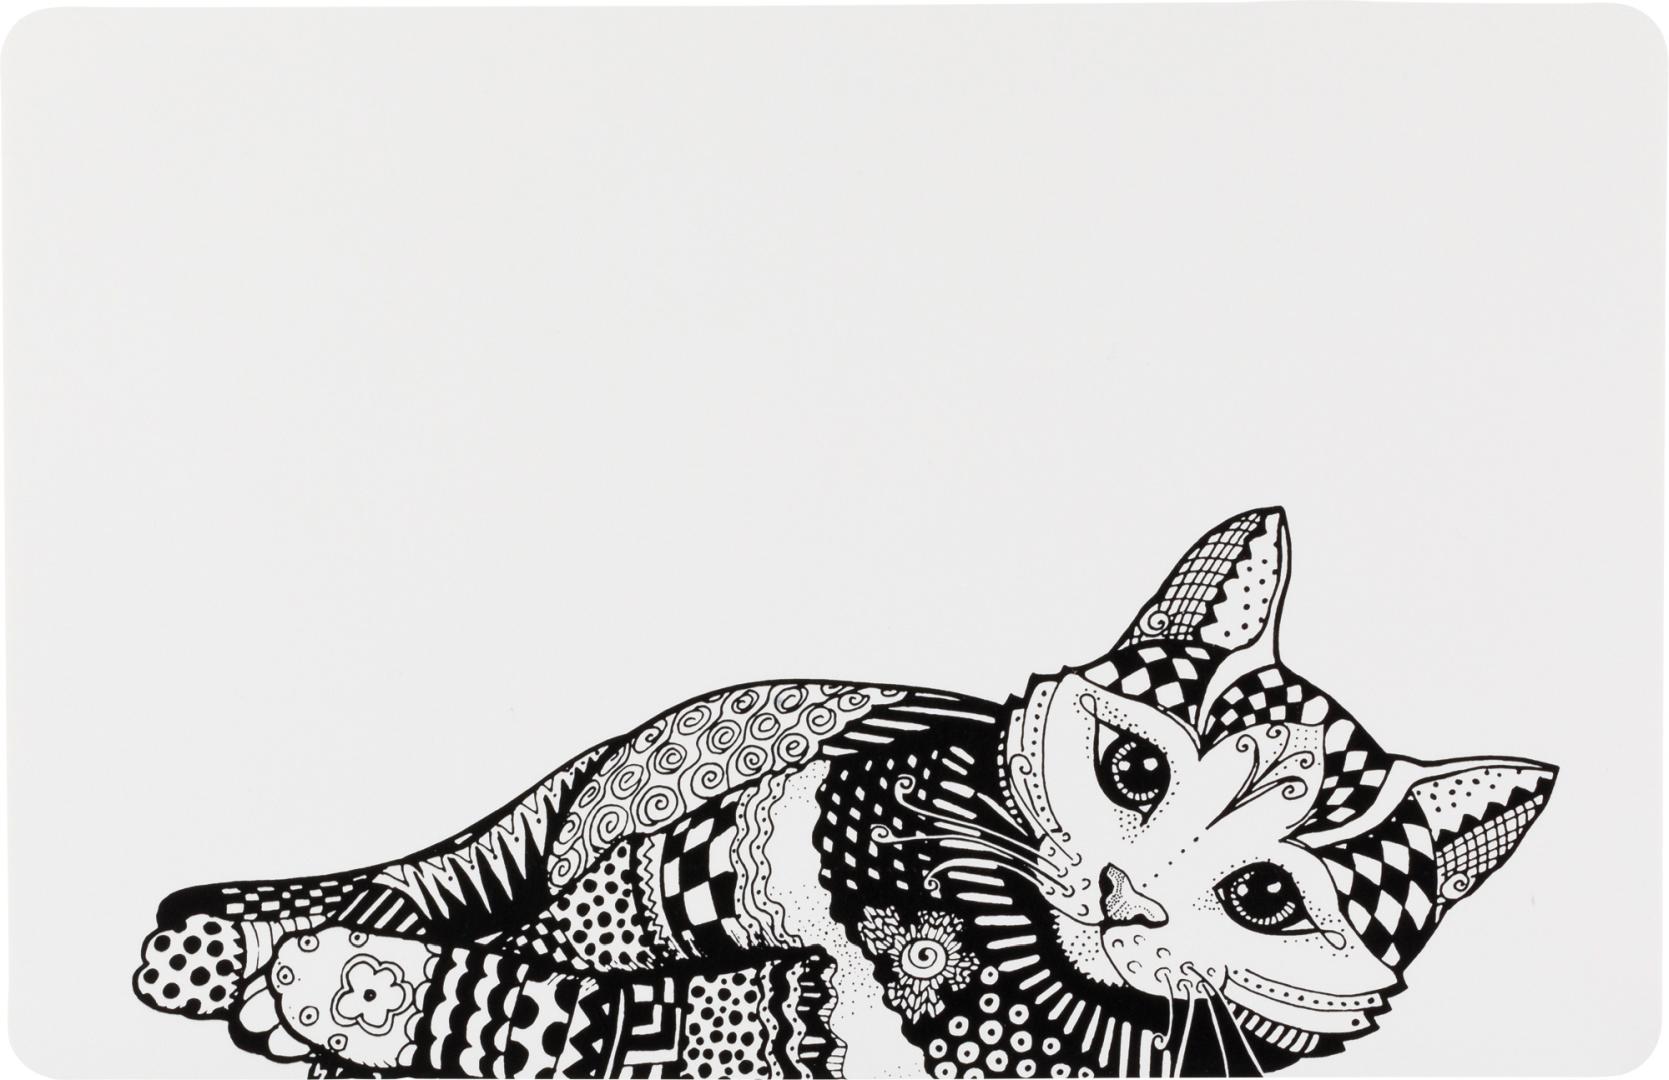 TRIXIE Napfunterlage Katze, 44 x 28 cm, weiß / schwarz